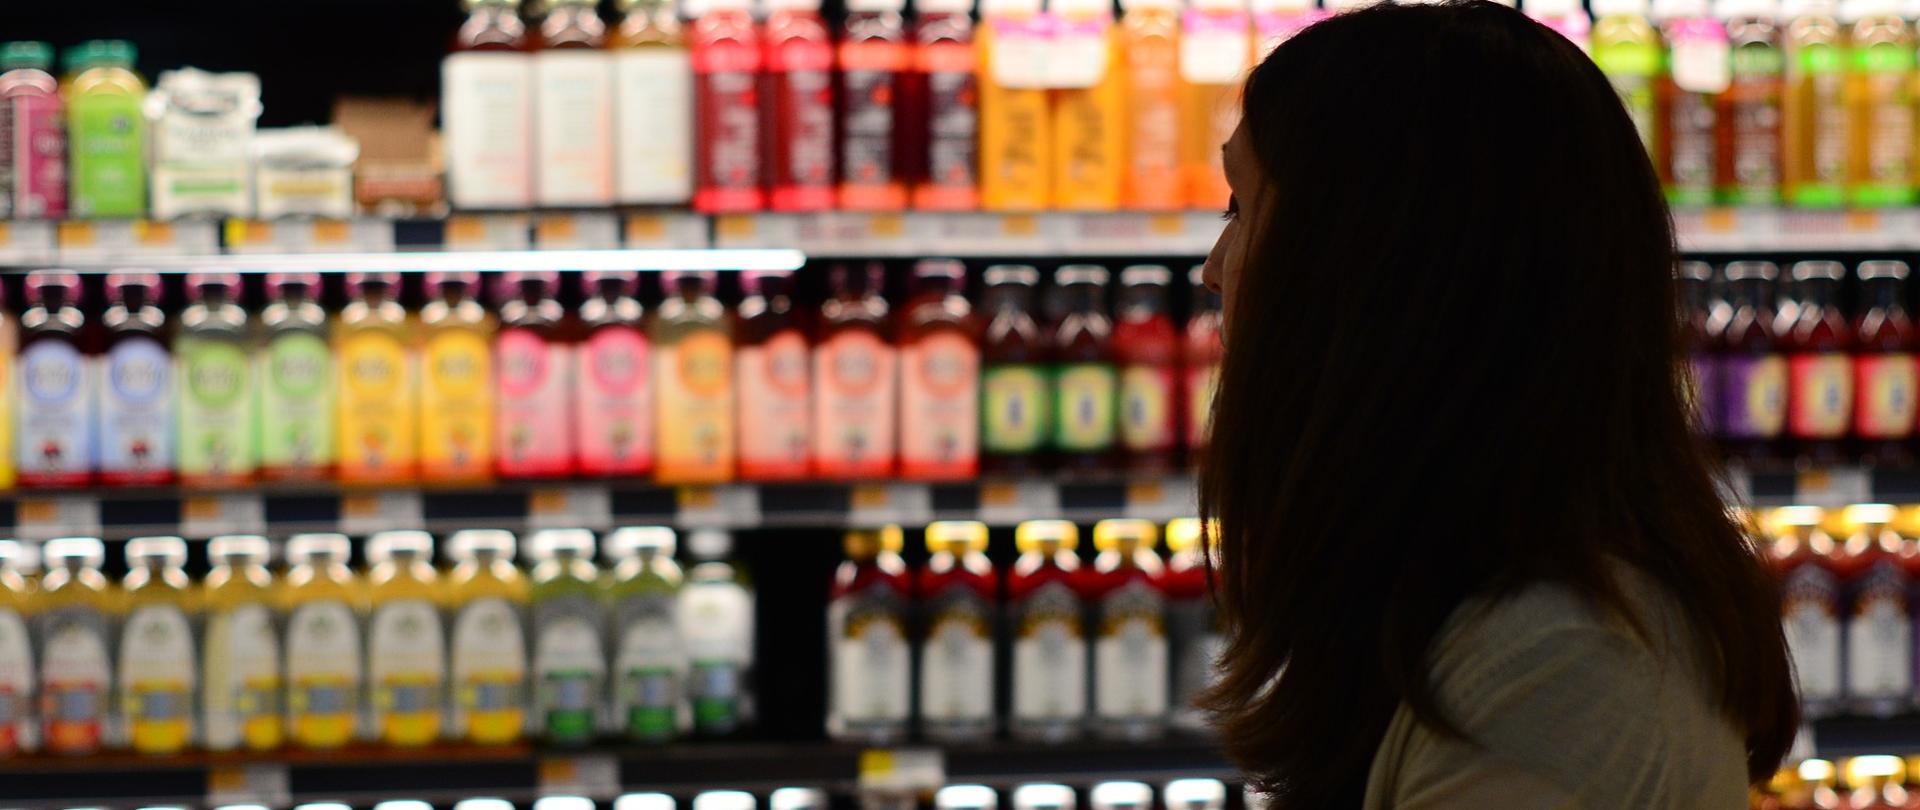 Na zdjęciu znajduje się kobieta, która robi zakupy w sklepie spożywczym. W tle są półki z napojami.